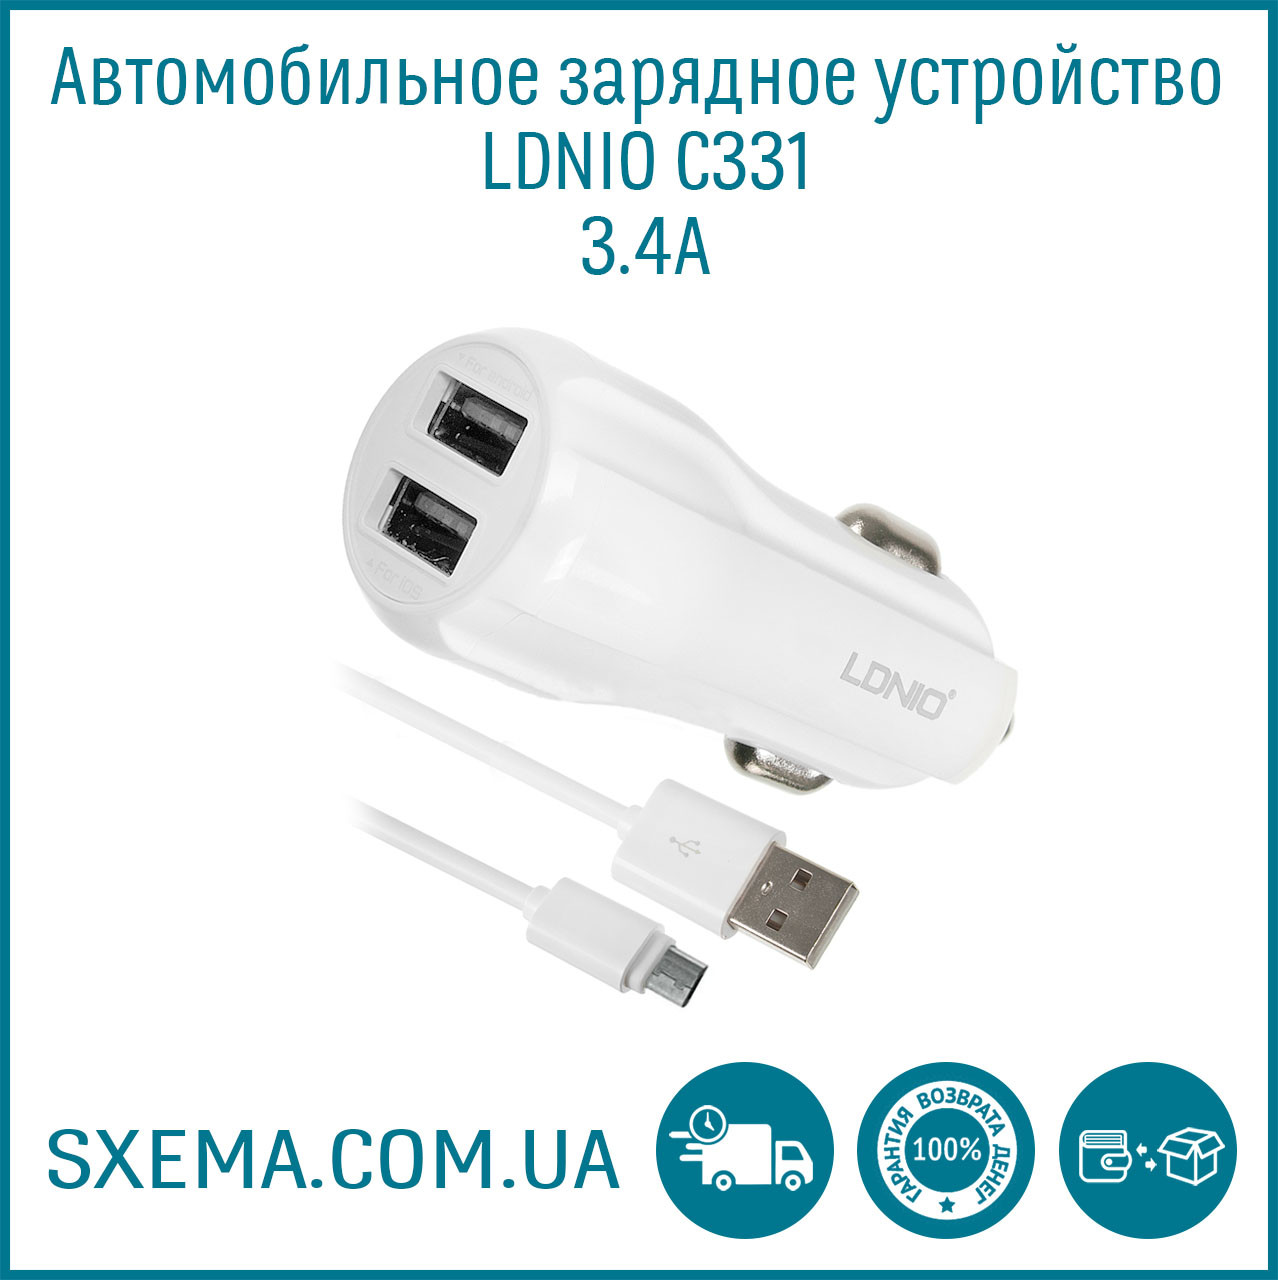 Автомобильное зарядное устройство USB LDNIO C331 3.4A , 2 USB с кабелем .